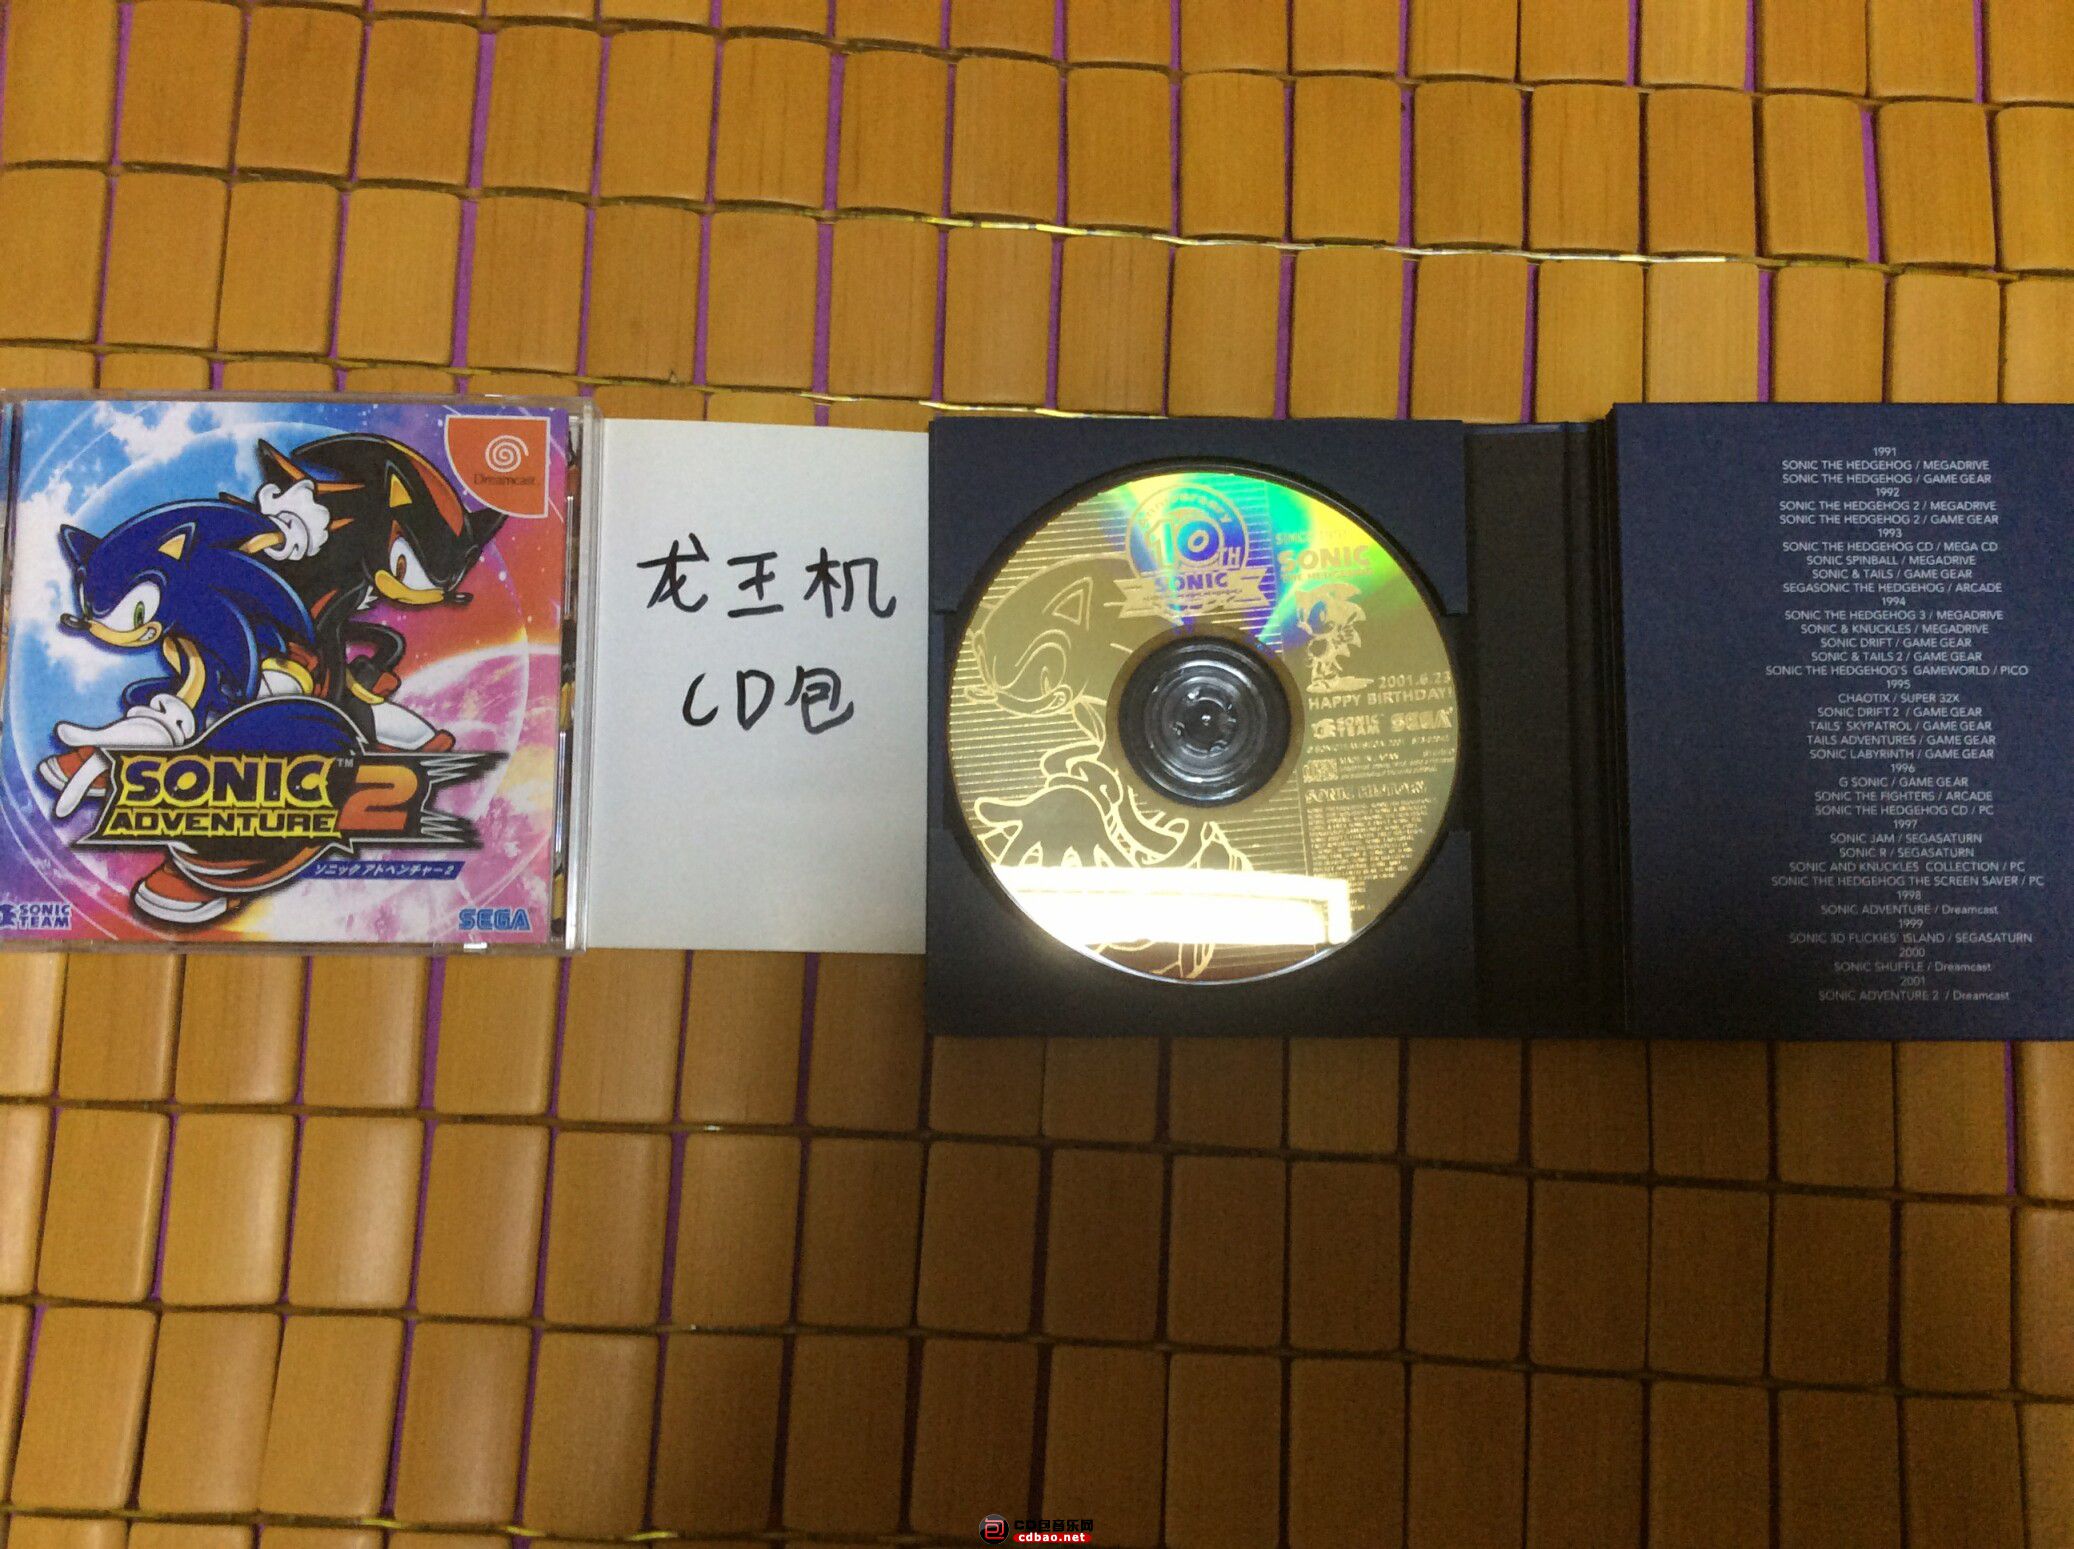 左面是游戏碟，右面是CD碟。